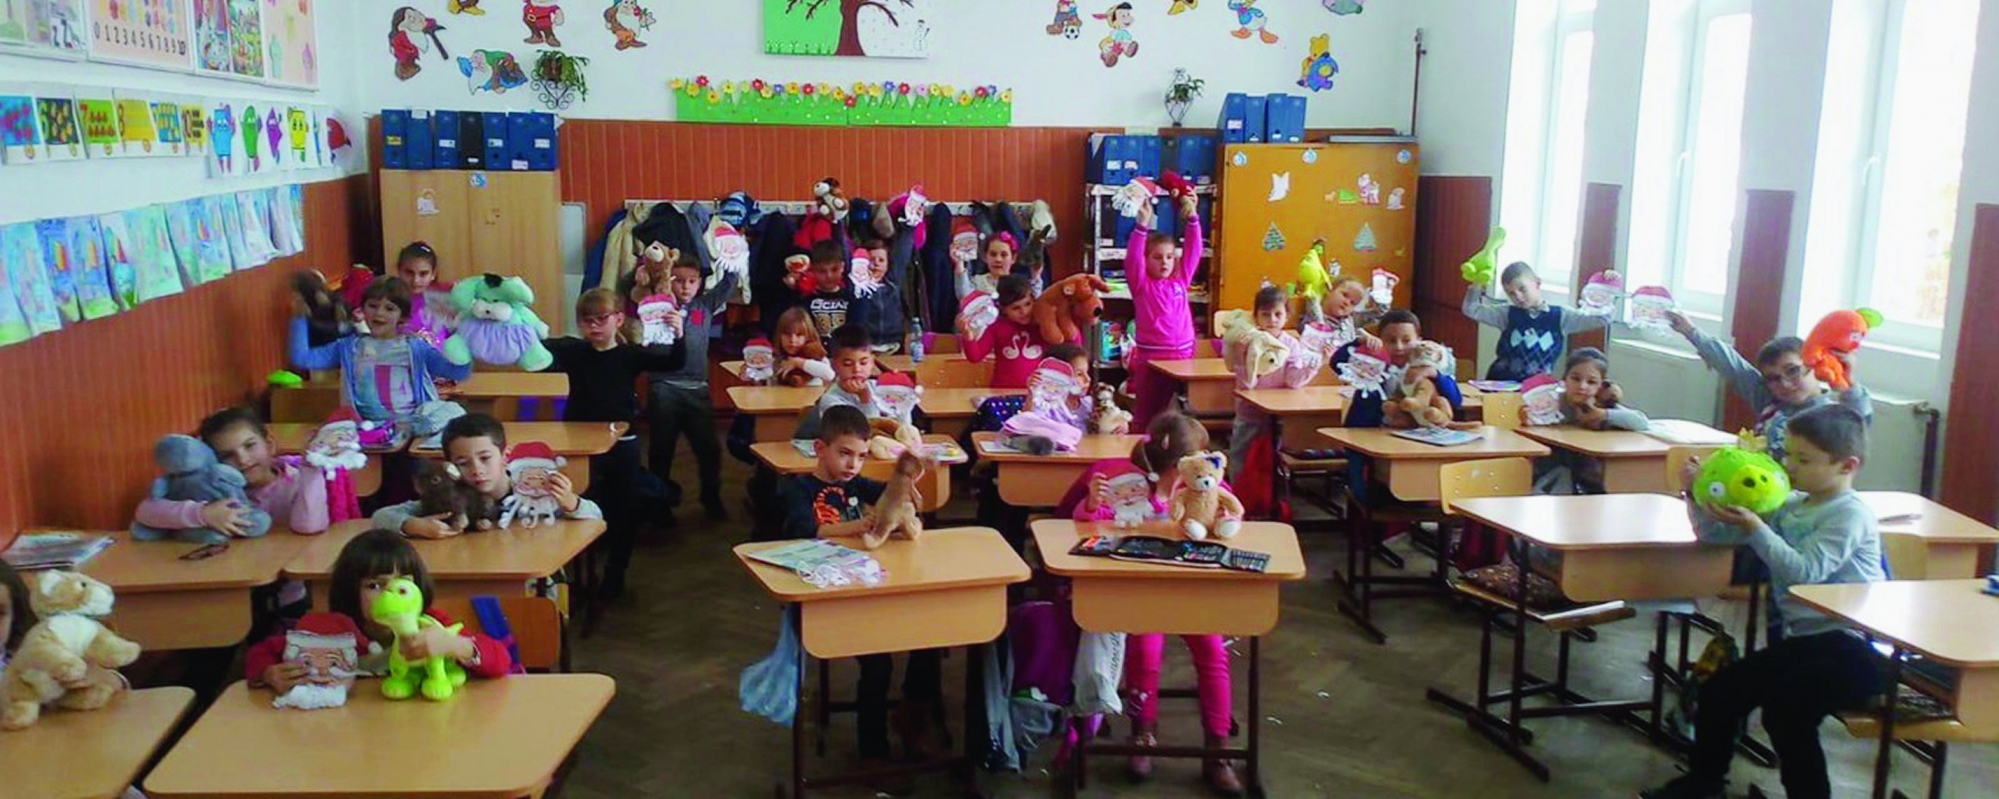 Une des classes de la commune de Jidvei, en Transsylvanie roumaine, après la réception de mobilier et de peluches.